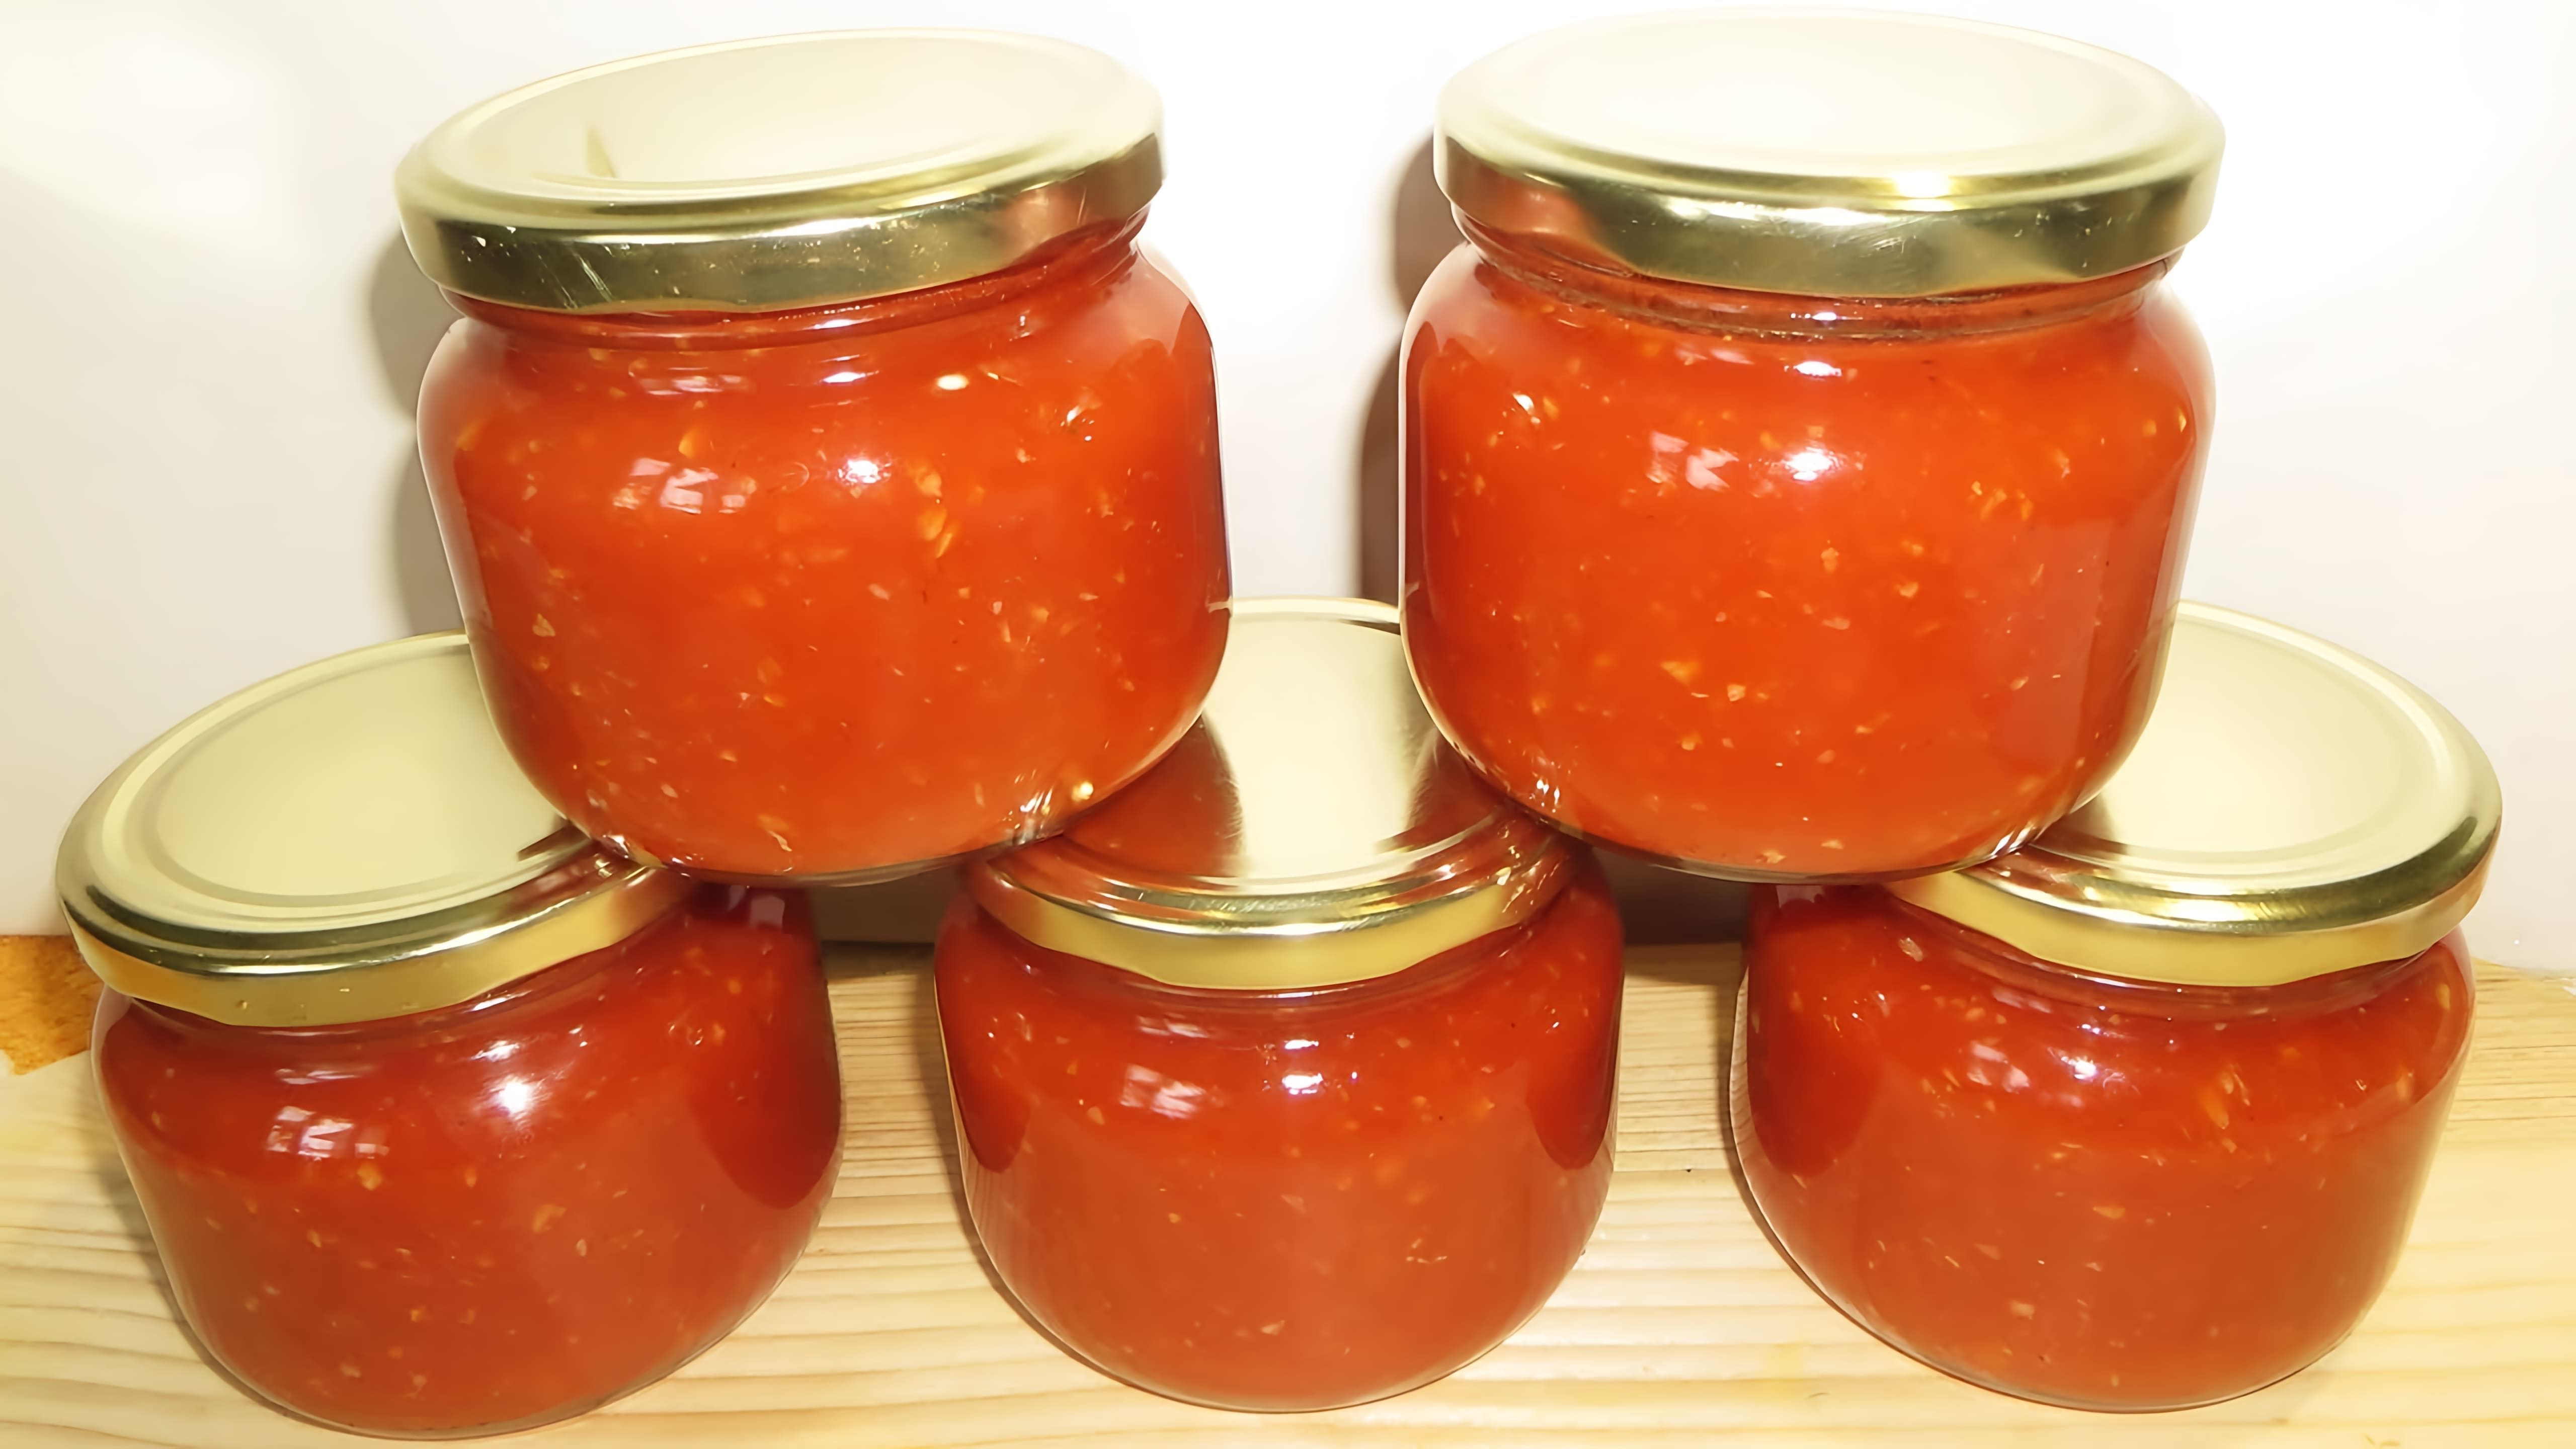 В этом видео показан процесс приготовления двух видов соуса из помидоров: кетчупа и сацебели